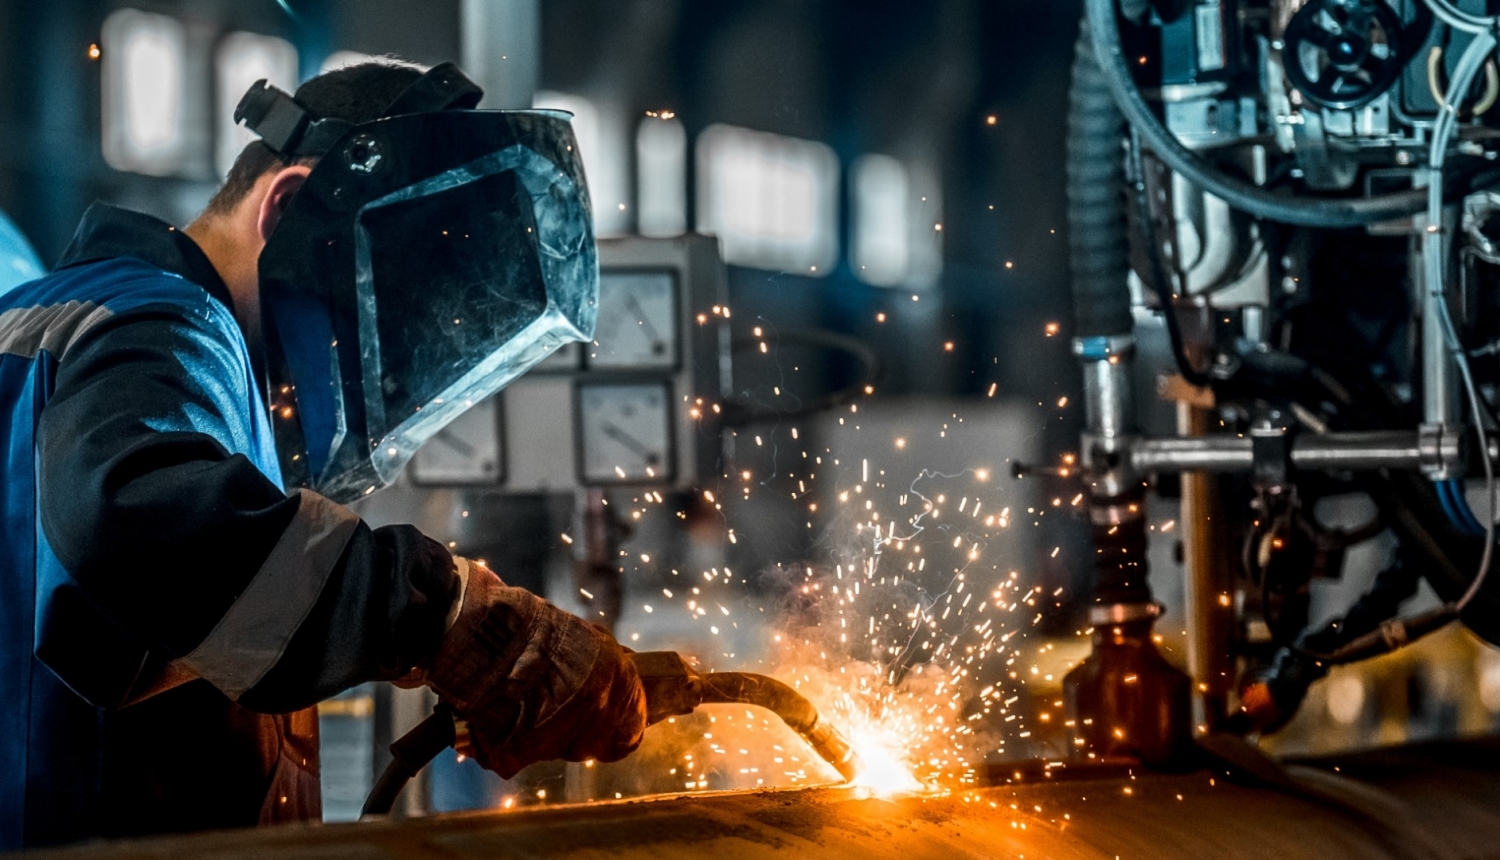 Materiāli no VIAA vebināra Stunda nozarē par karjeras iespējām mašīnbūves un metālapstrādes jomā